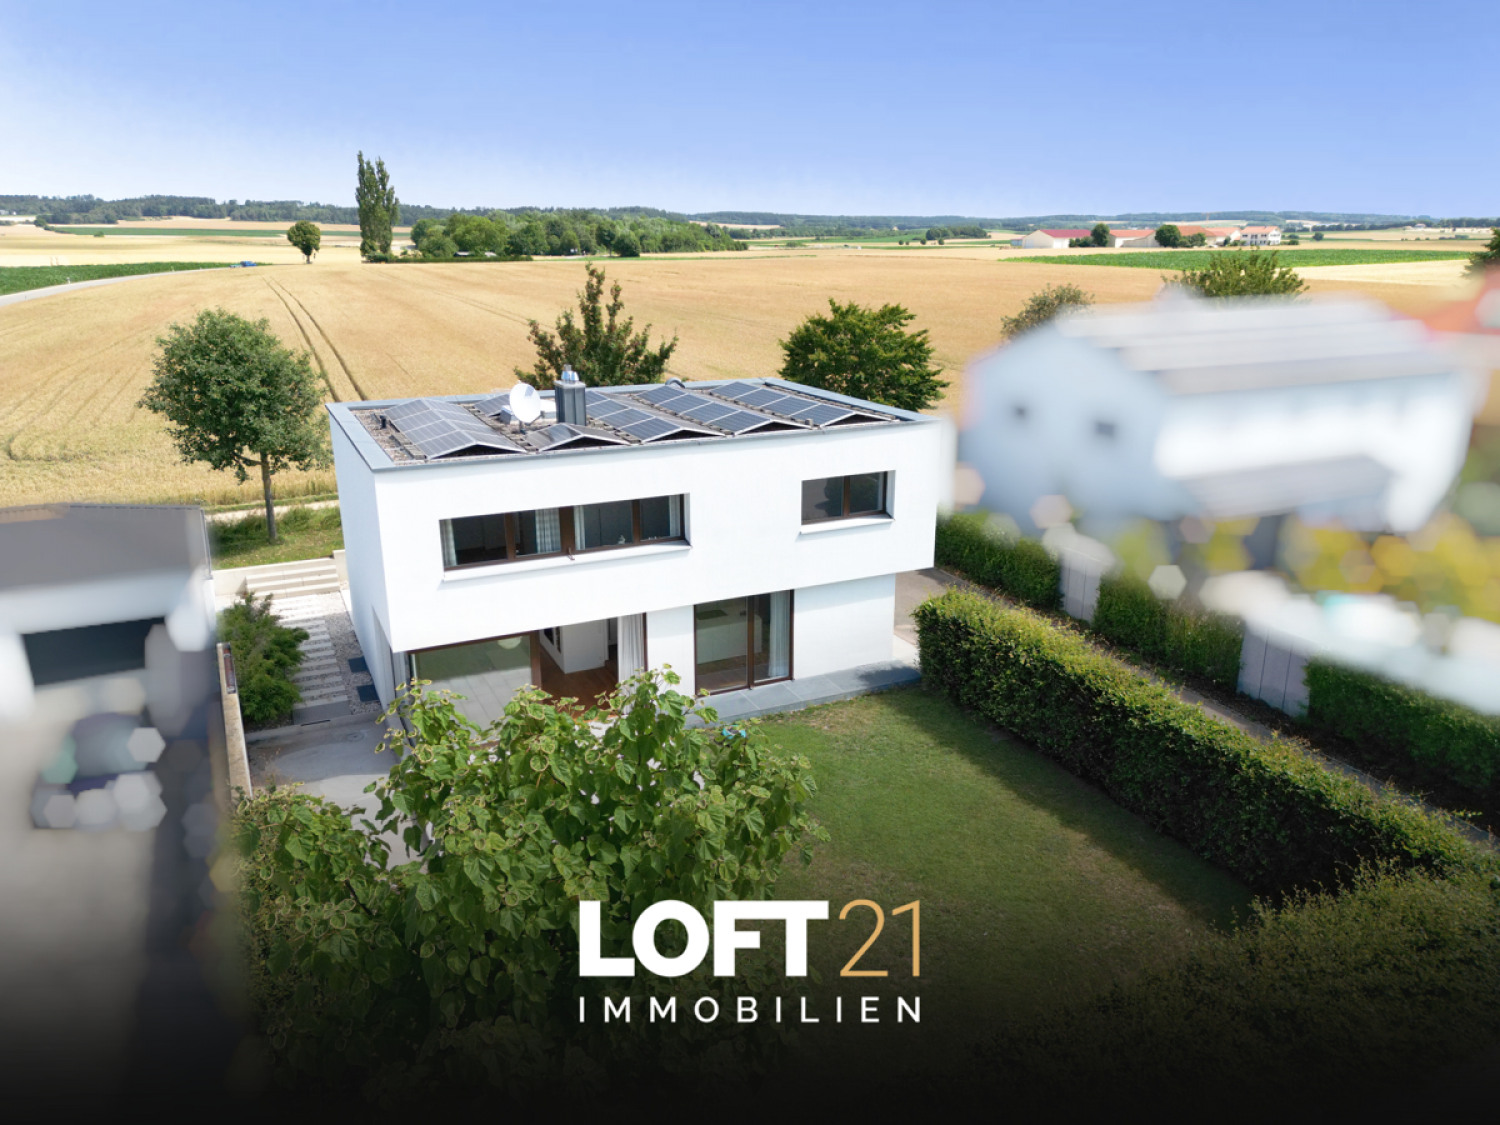 LOFT21 Immobilien 